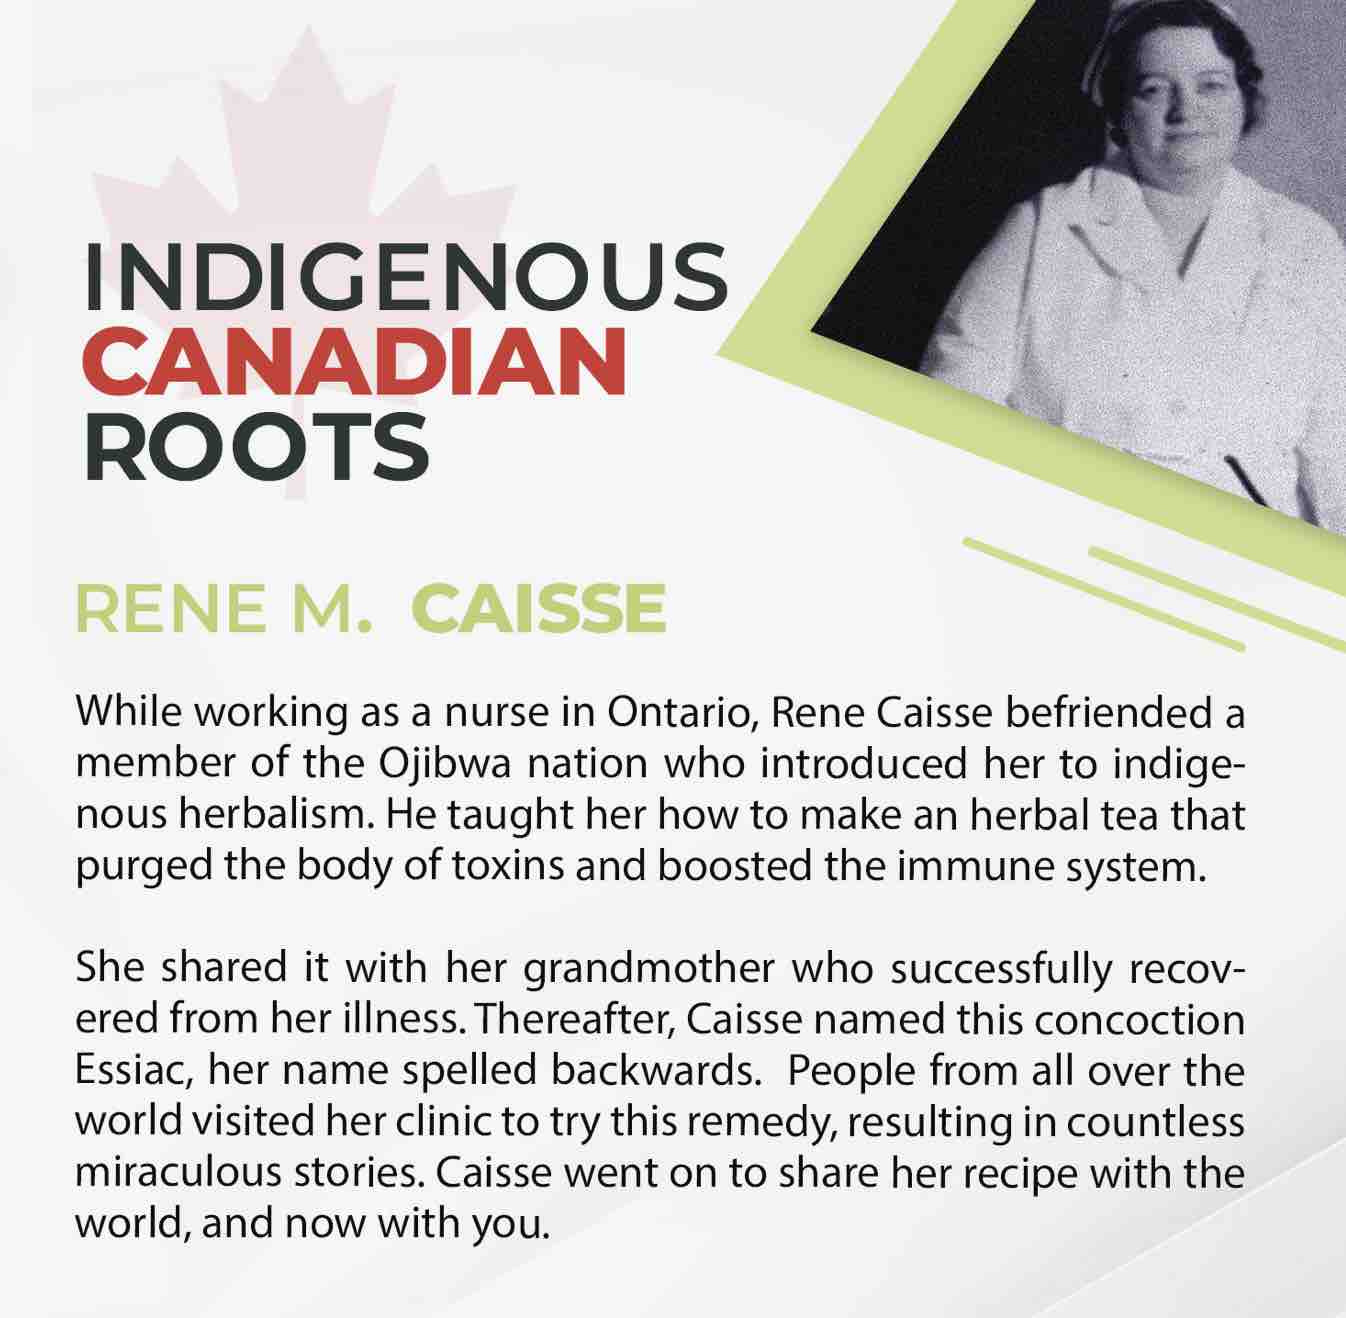 racines-amerindiennes-de-la-recette-de-renee-m-caisse.jpg